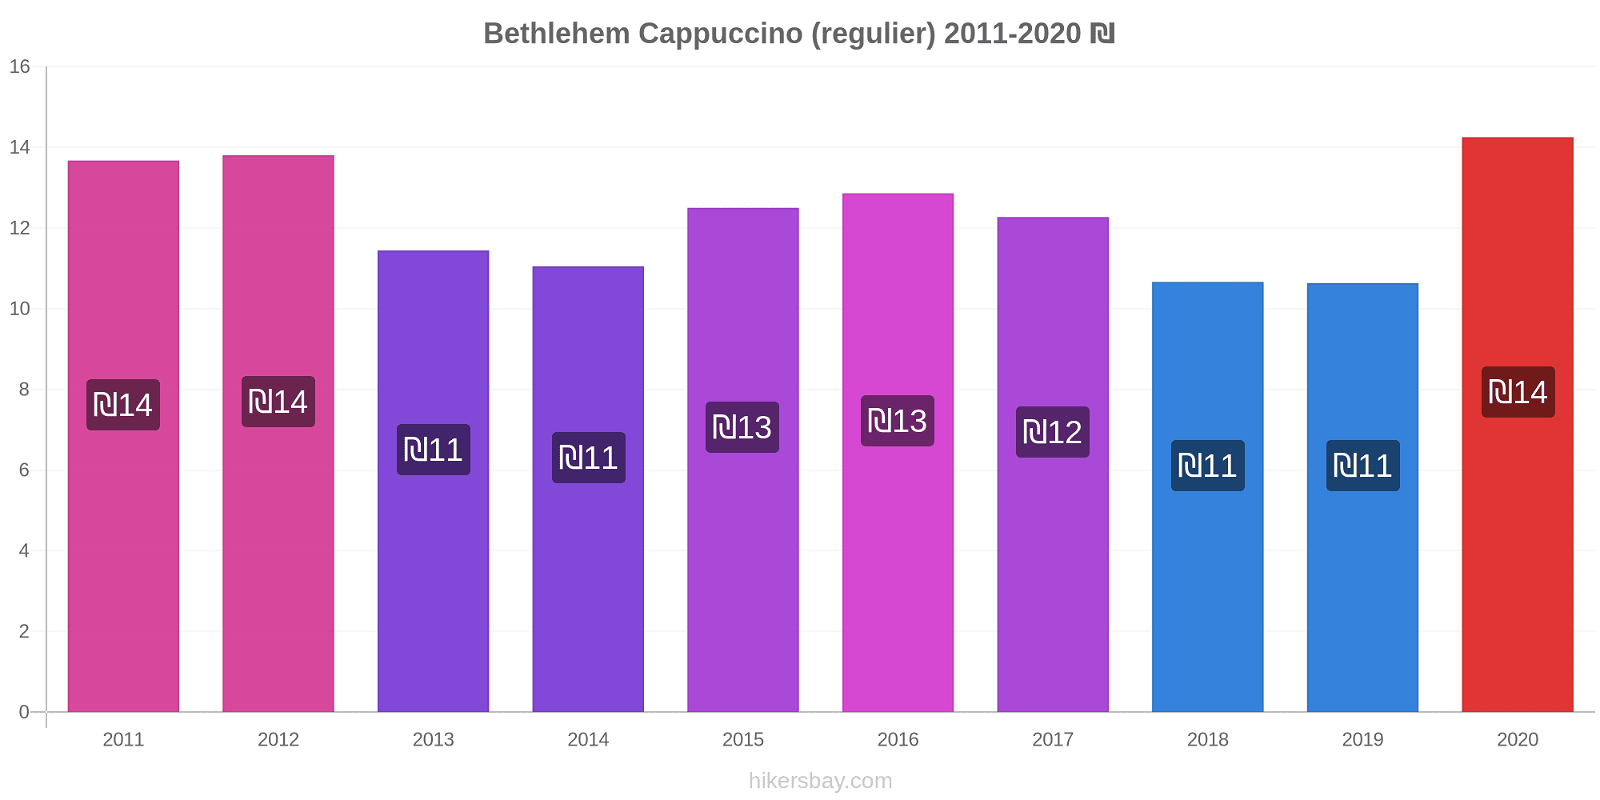 Bethlehem prijswijzigingen Cappuccino (regelmatige) hikersbay.com